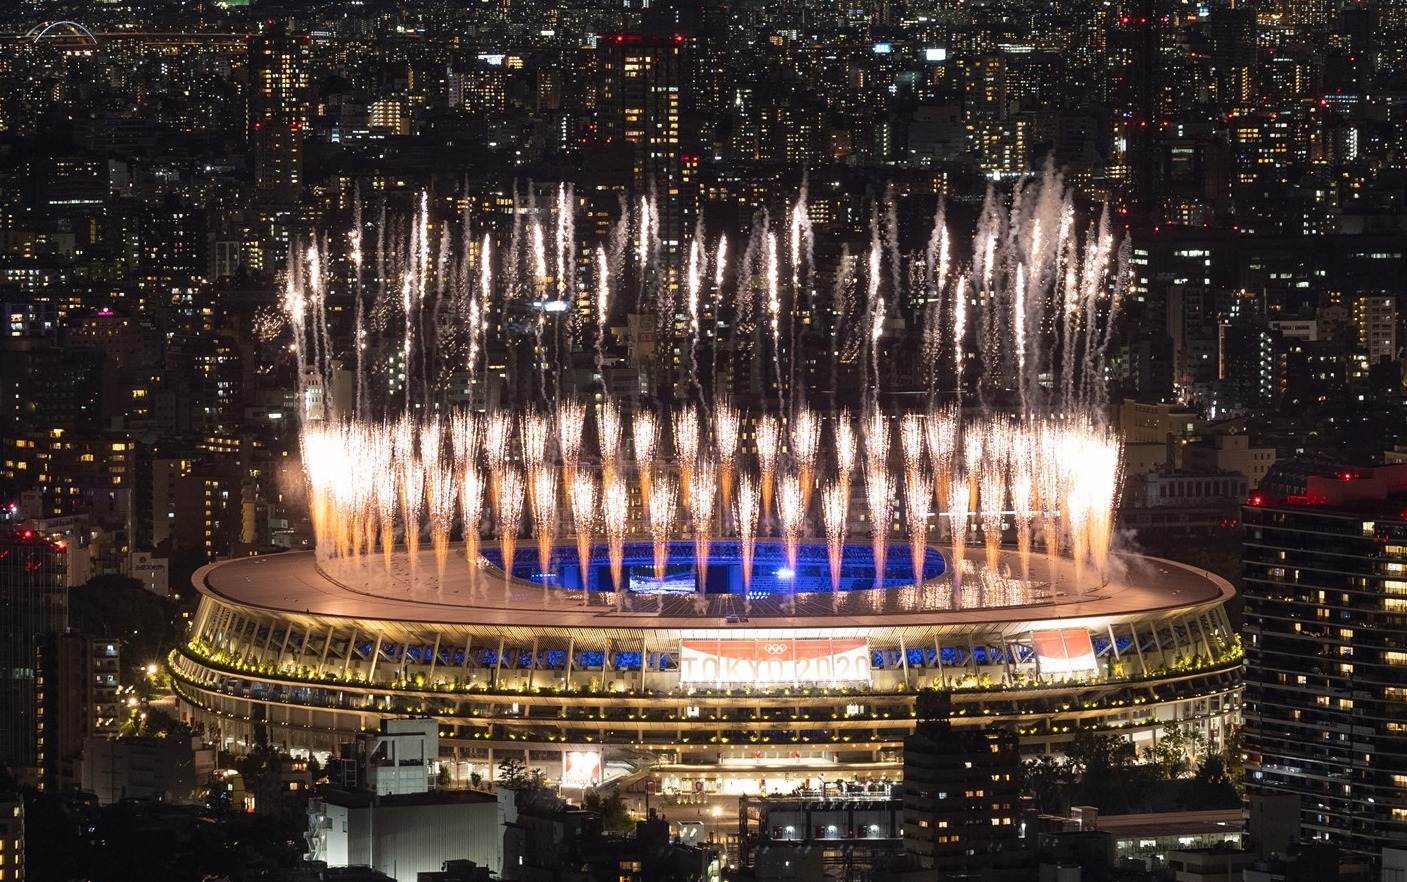 Pháo hoa rực sáng sân vận động Olympic tại Tokyo trong lễ bế mạc Olympic Tokyo 2020. (Ảnh: Tokyo 2020)